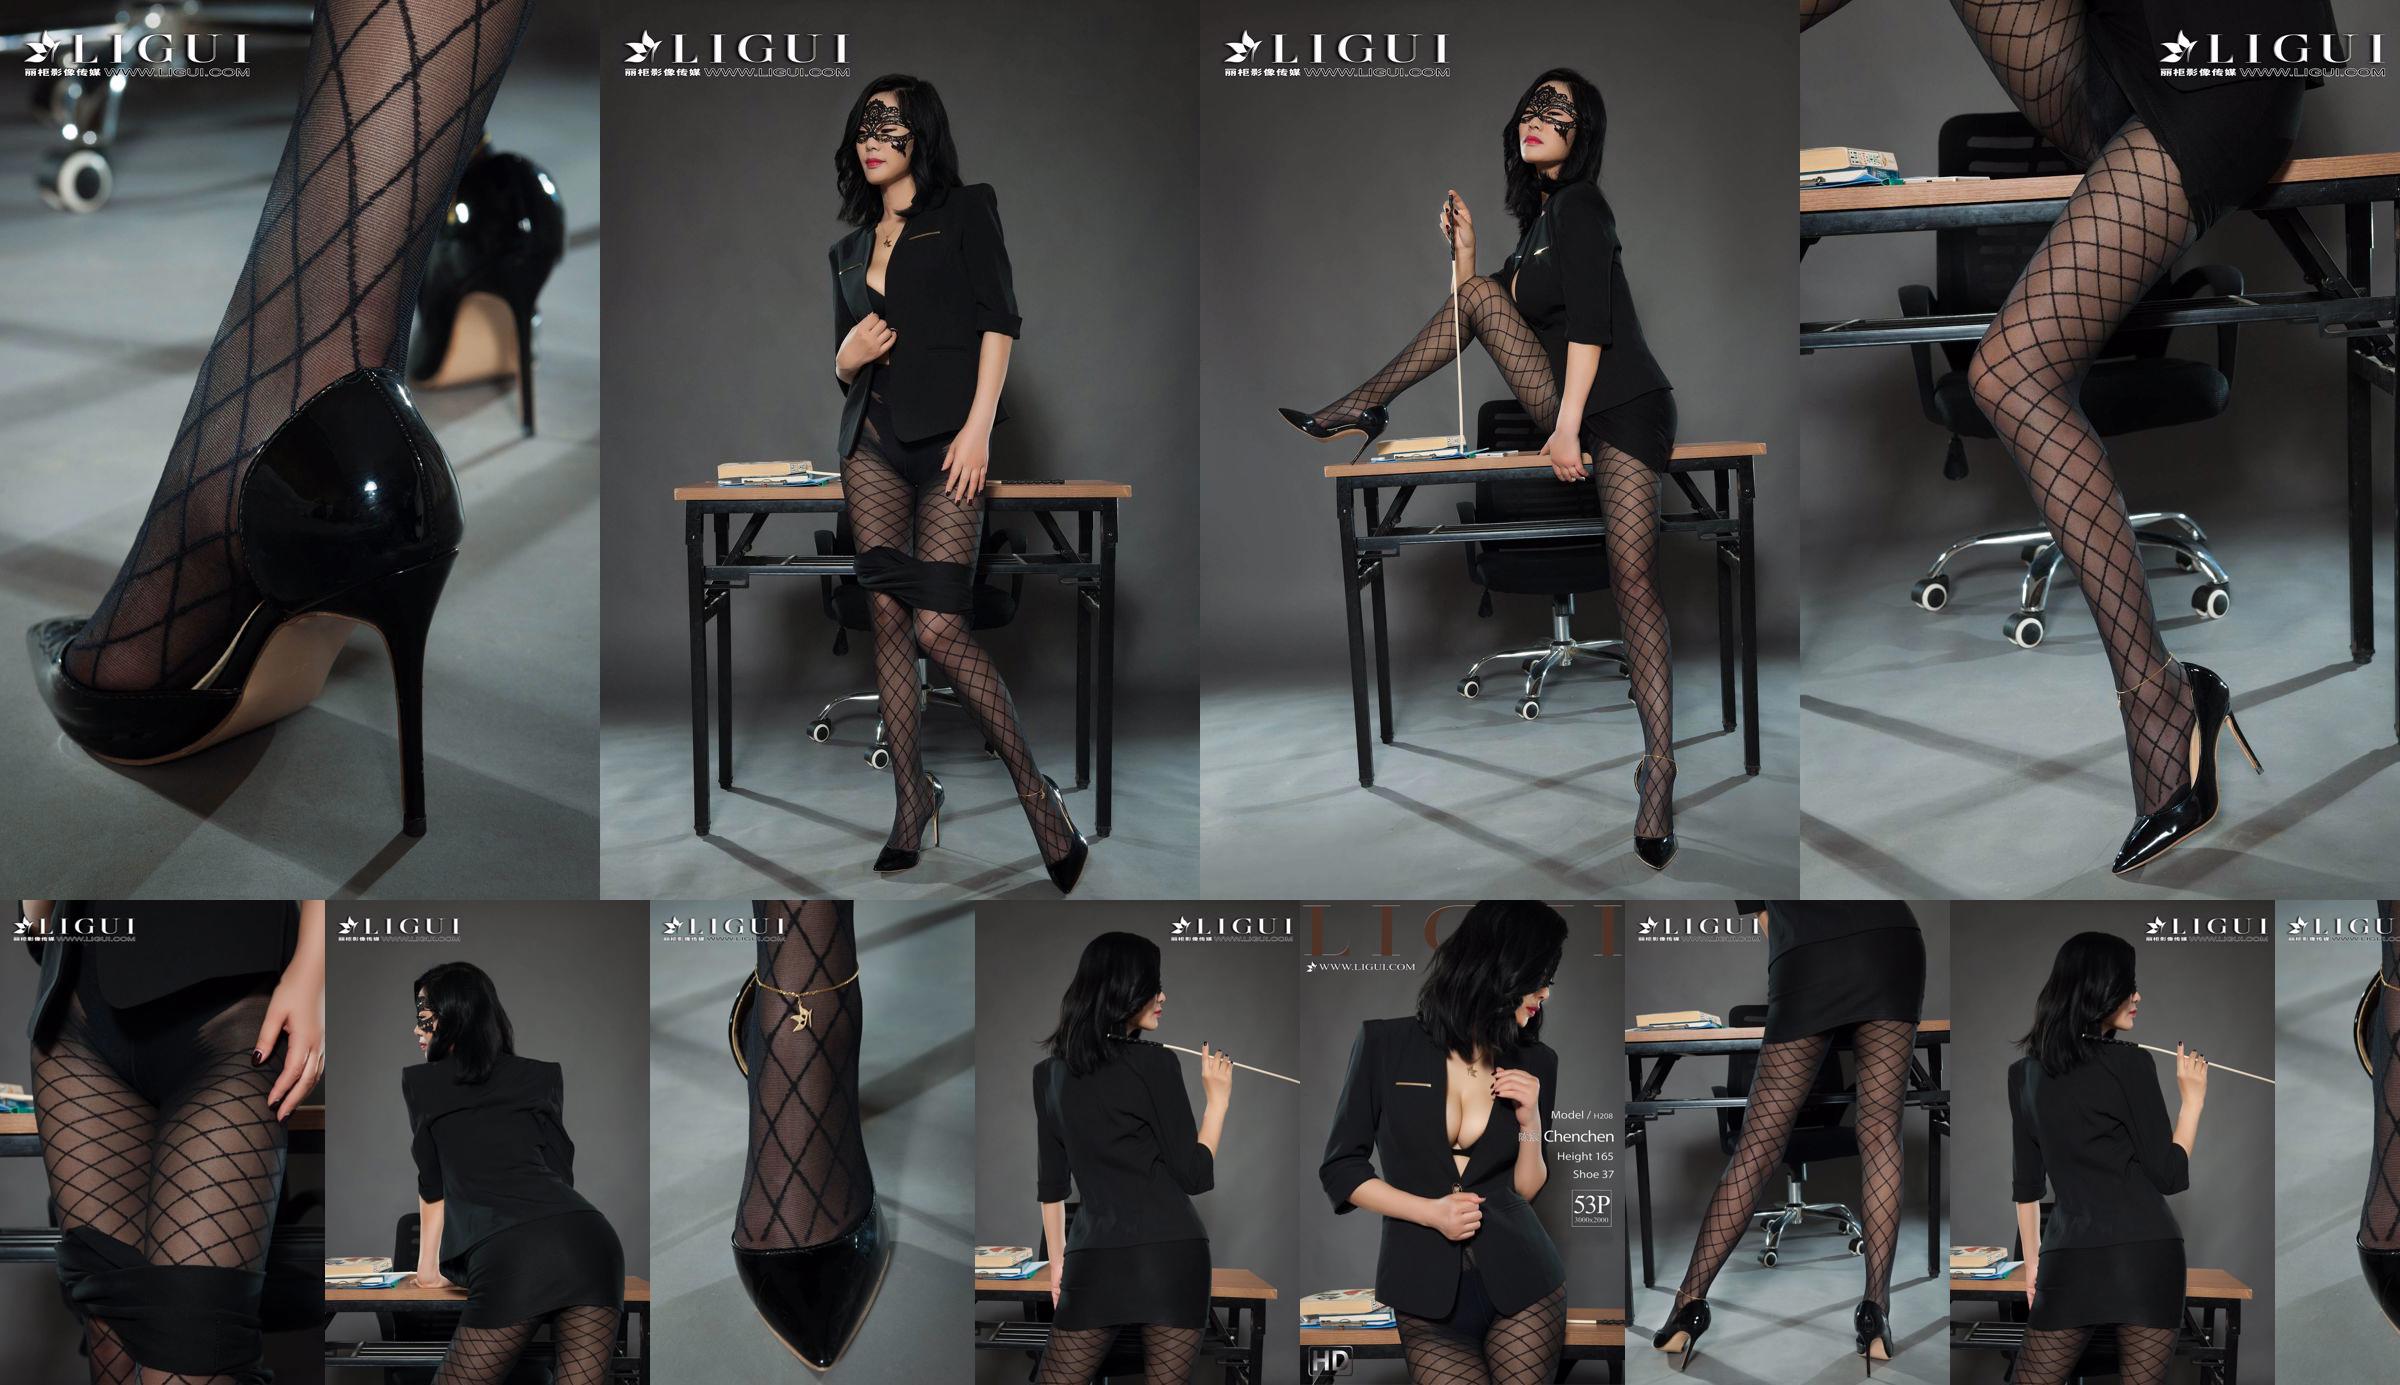 Người mẫu chân Chen Chen "Black Silk Milf" [Ligui Liguil] Vẻ đẹp Internet No.6b48f7 Trang 25